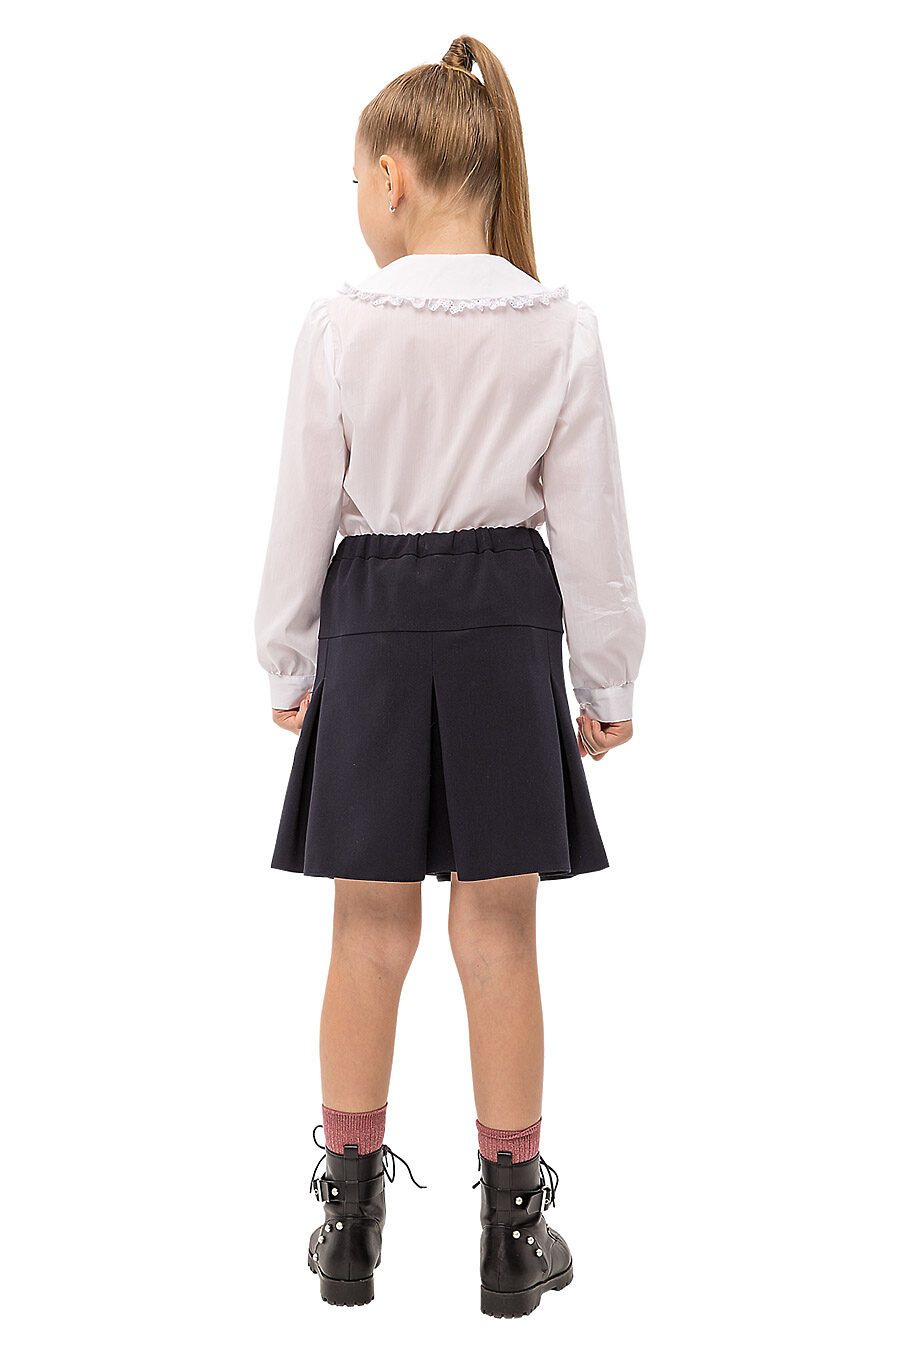 Блуза КАРАМЕЛЛИ (784905), купить в Moyo.moda